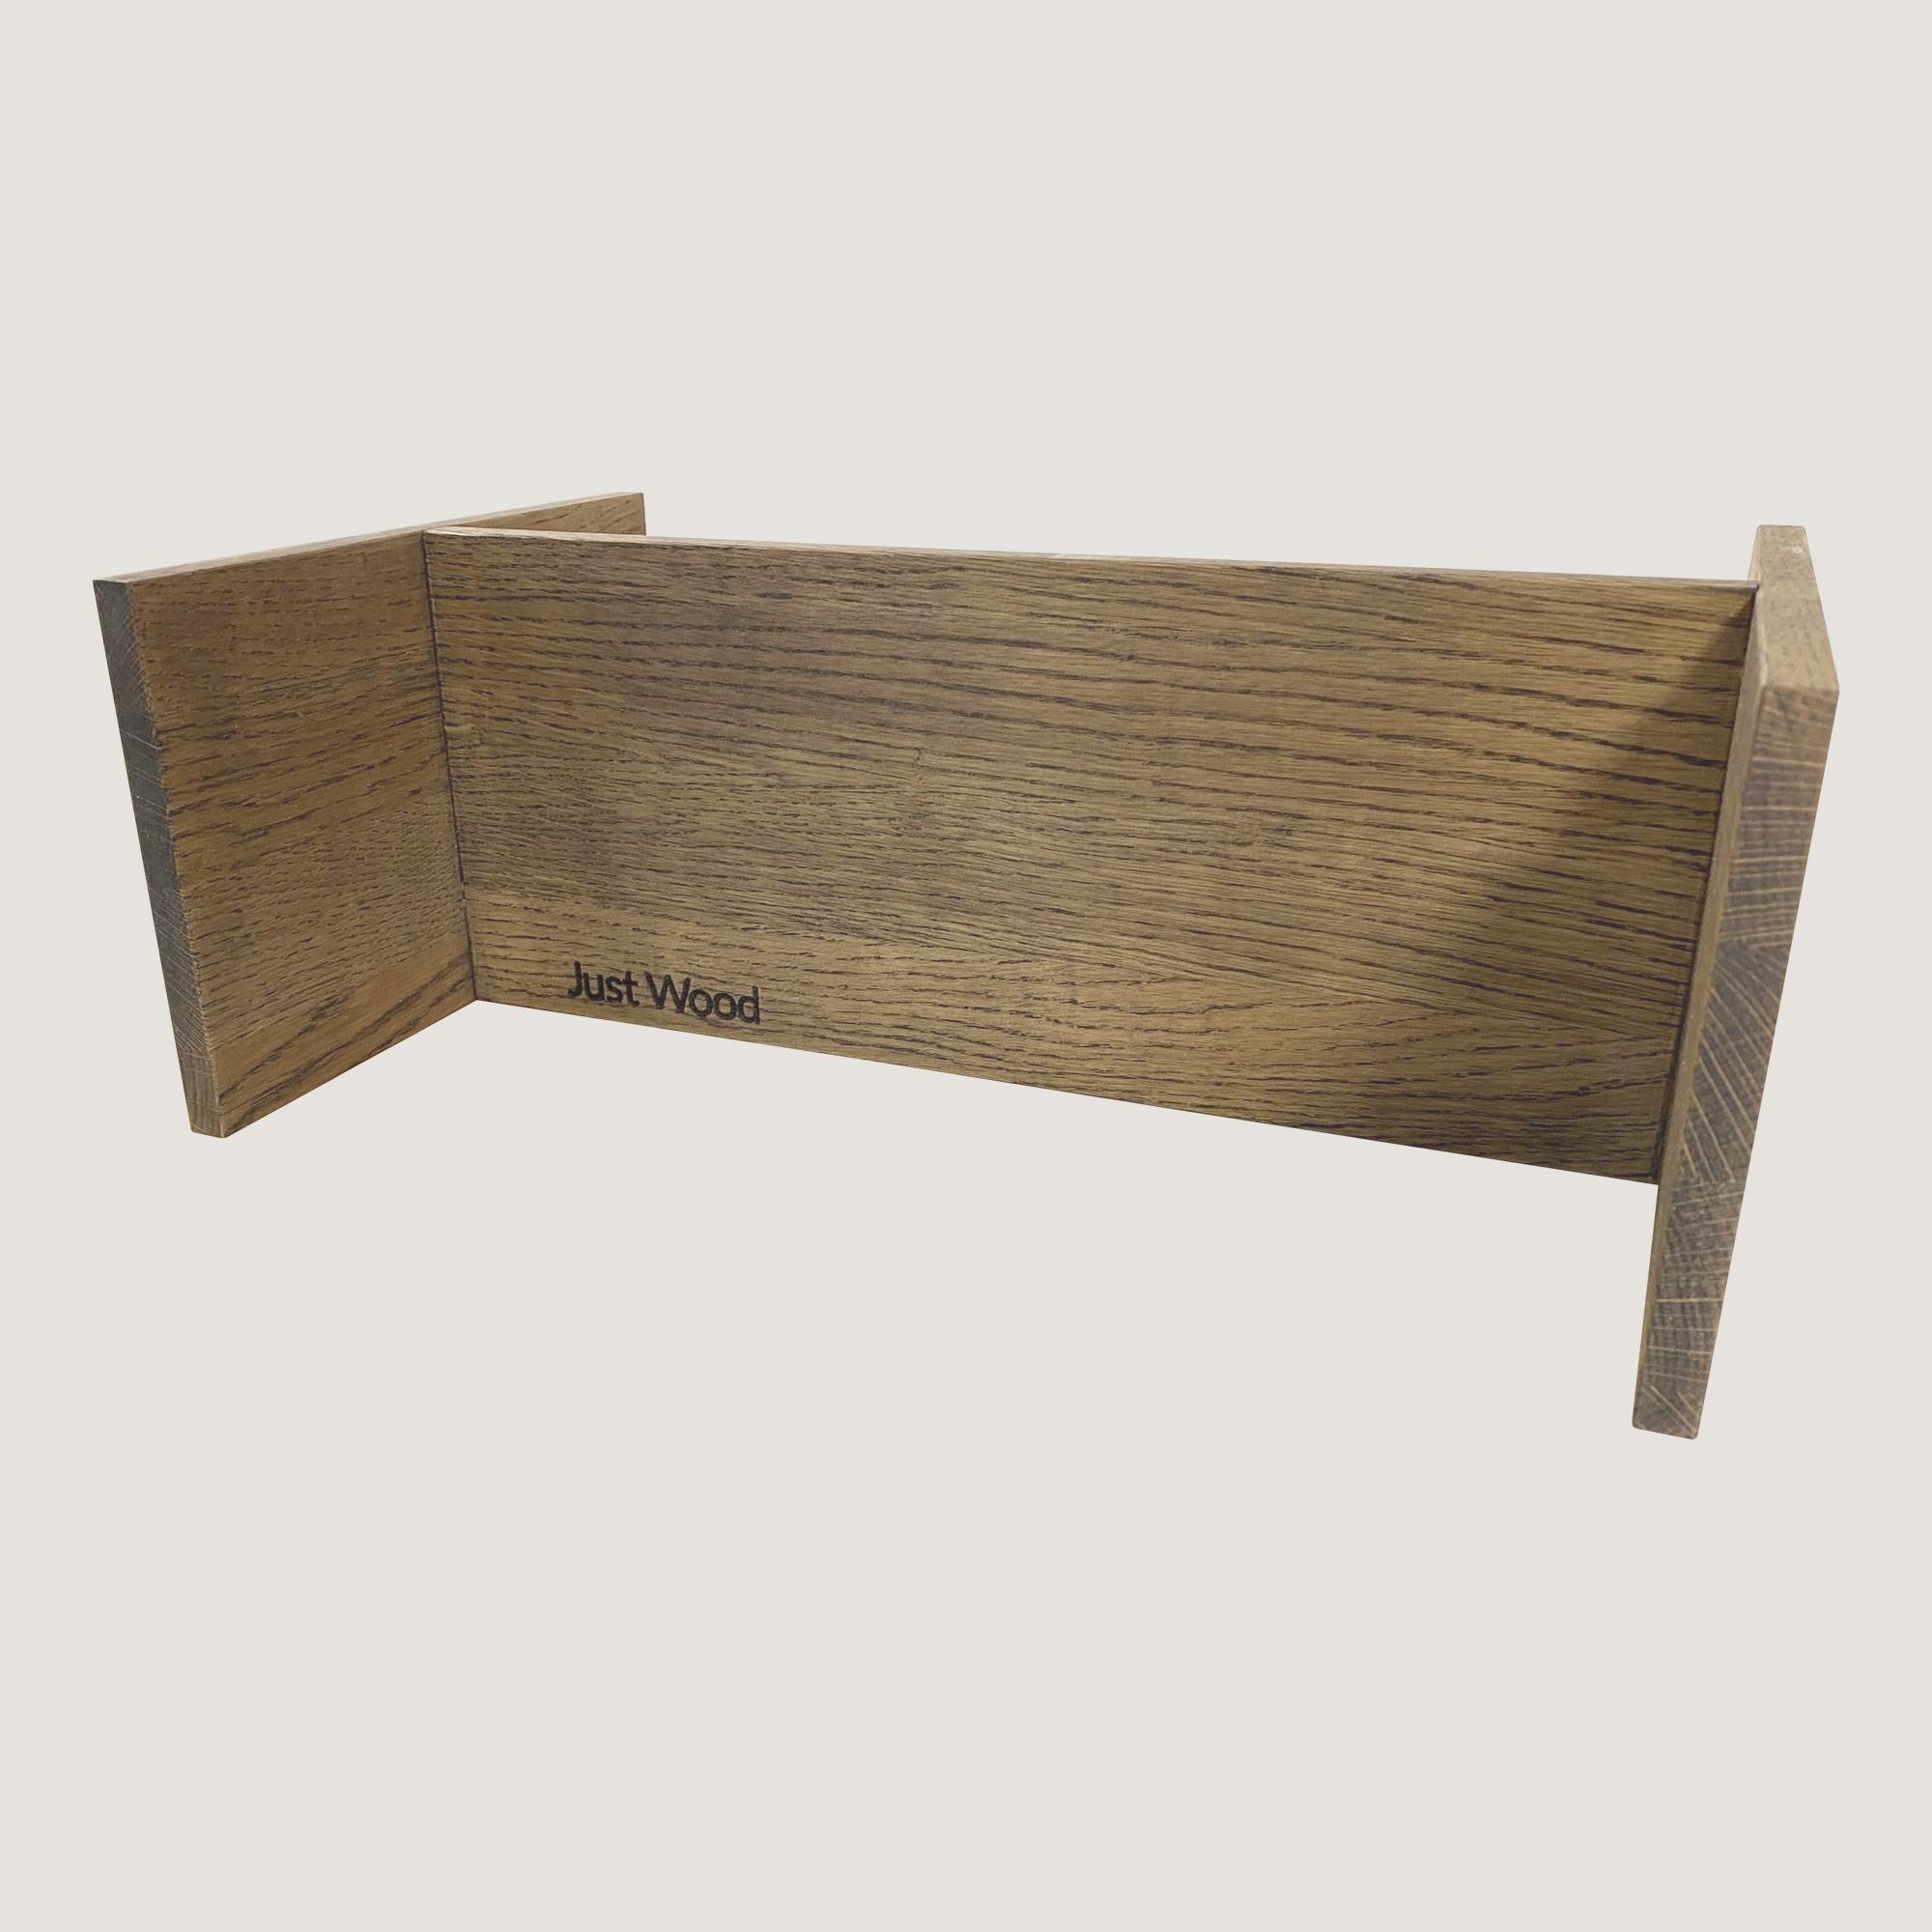 Just Wood dunkel gebeizte Schubladenorganizer für Badezimmermöbel